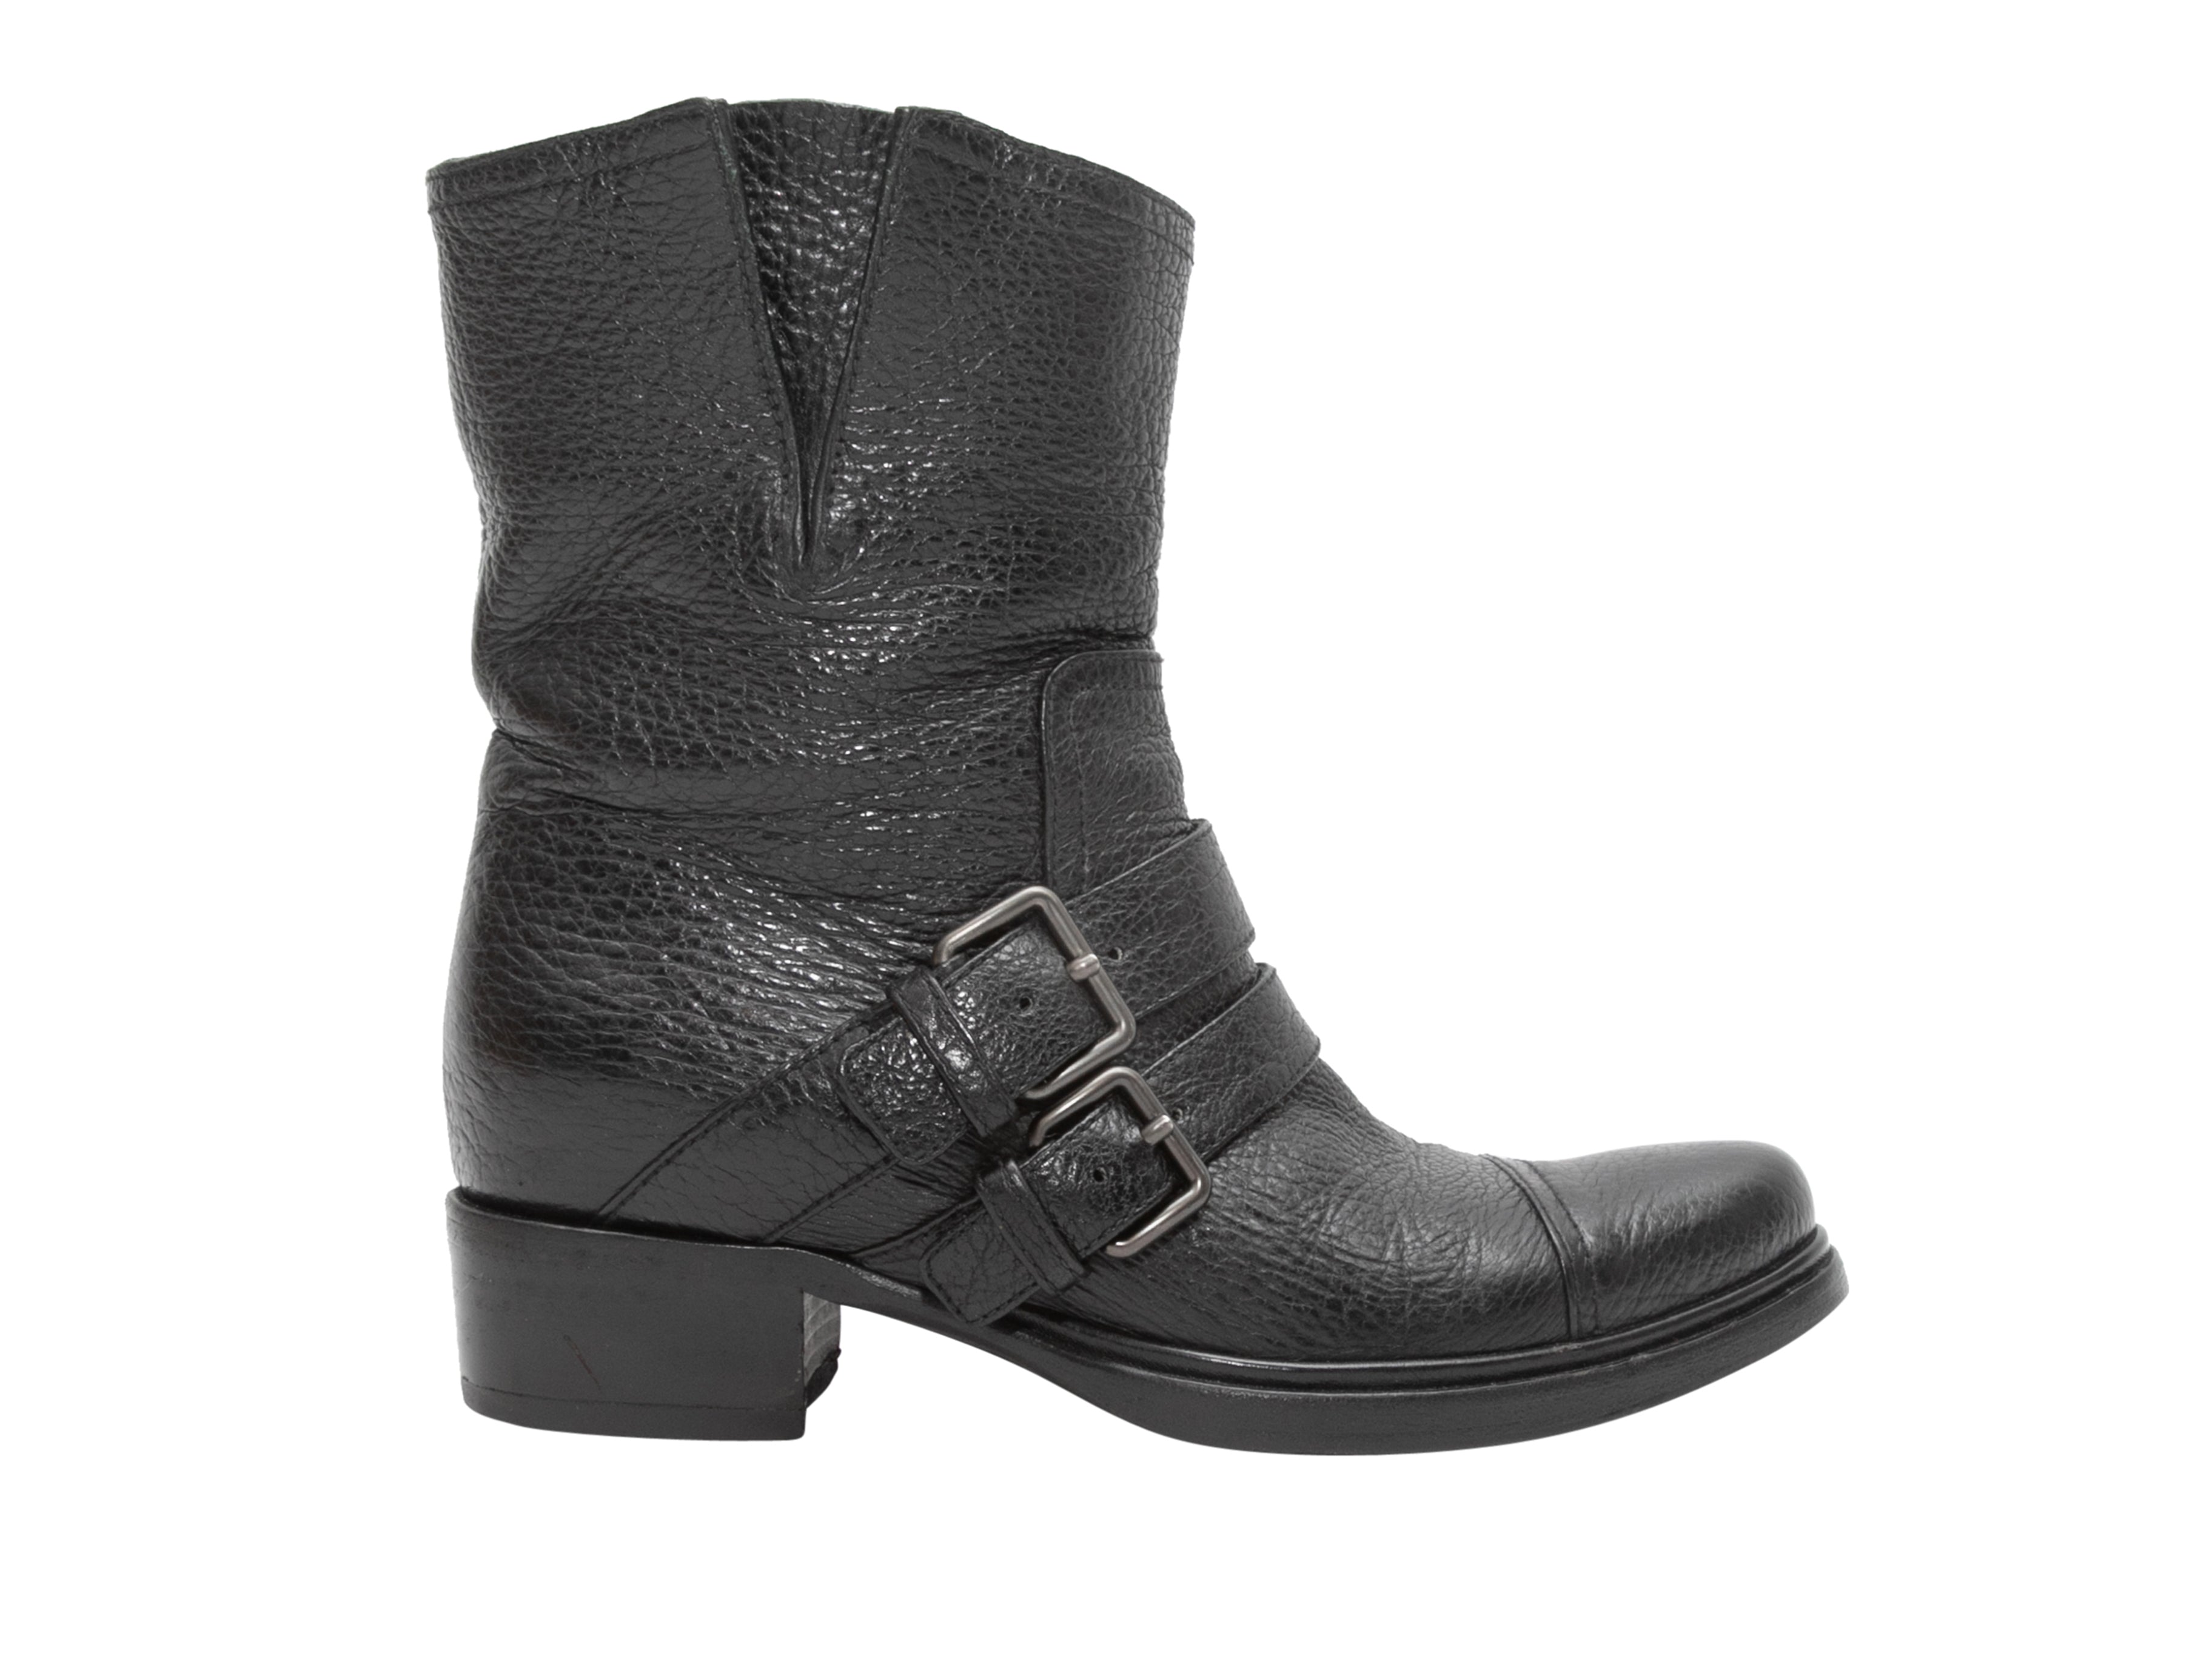 Louis Vuitton Shoe Size 39 Black Suede Block Heel Lace Up Patent Detail Boots